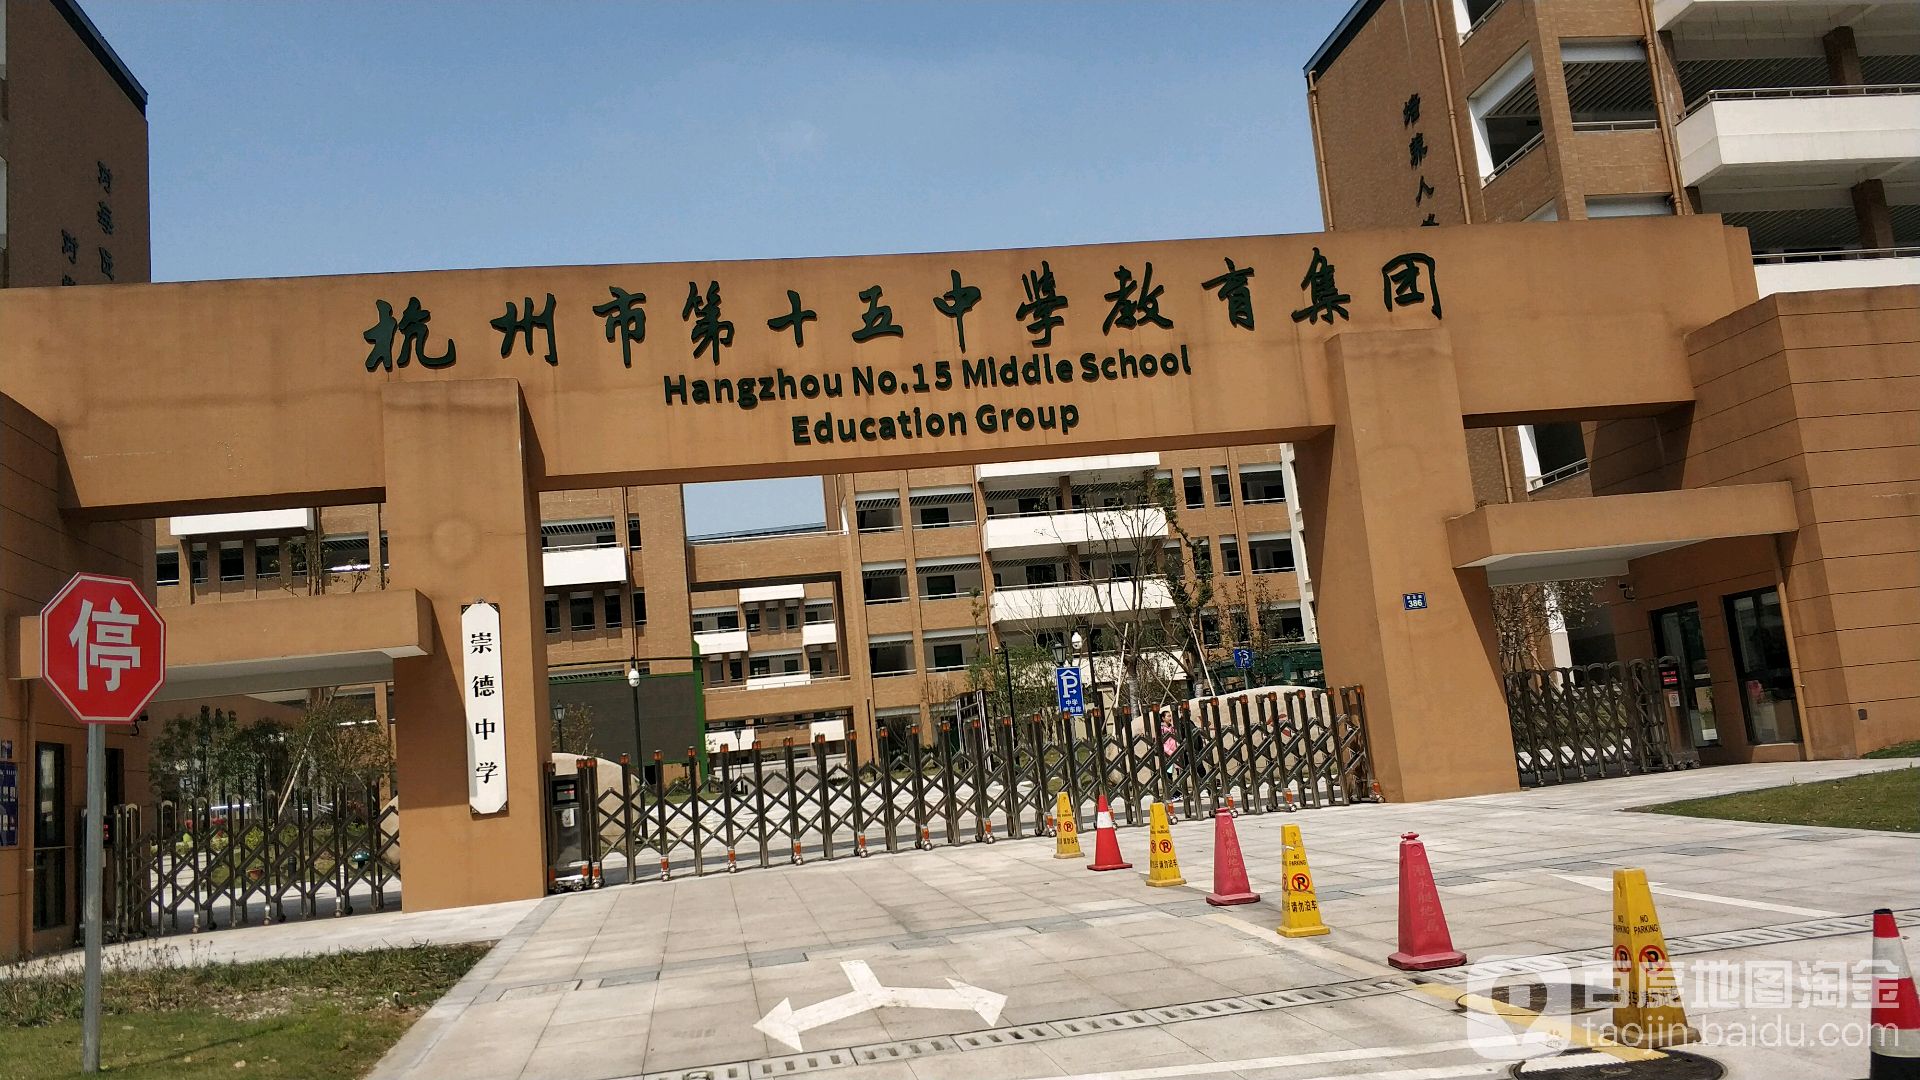 西湖区标签: 中学 教育培训  杭州十五中崇德校区共多少人浏览